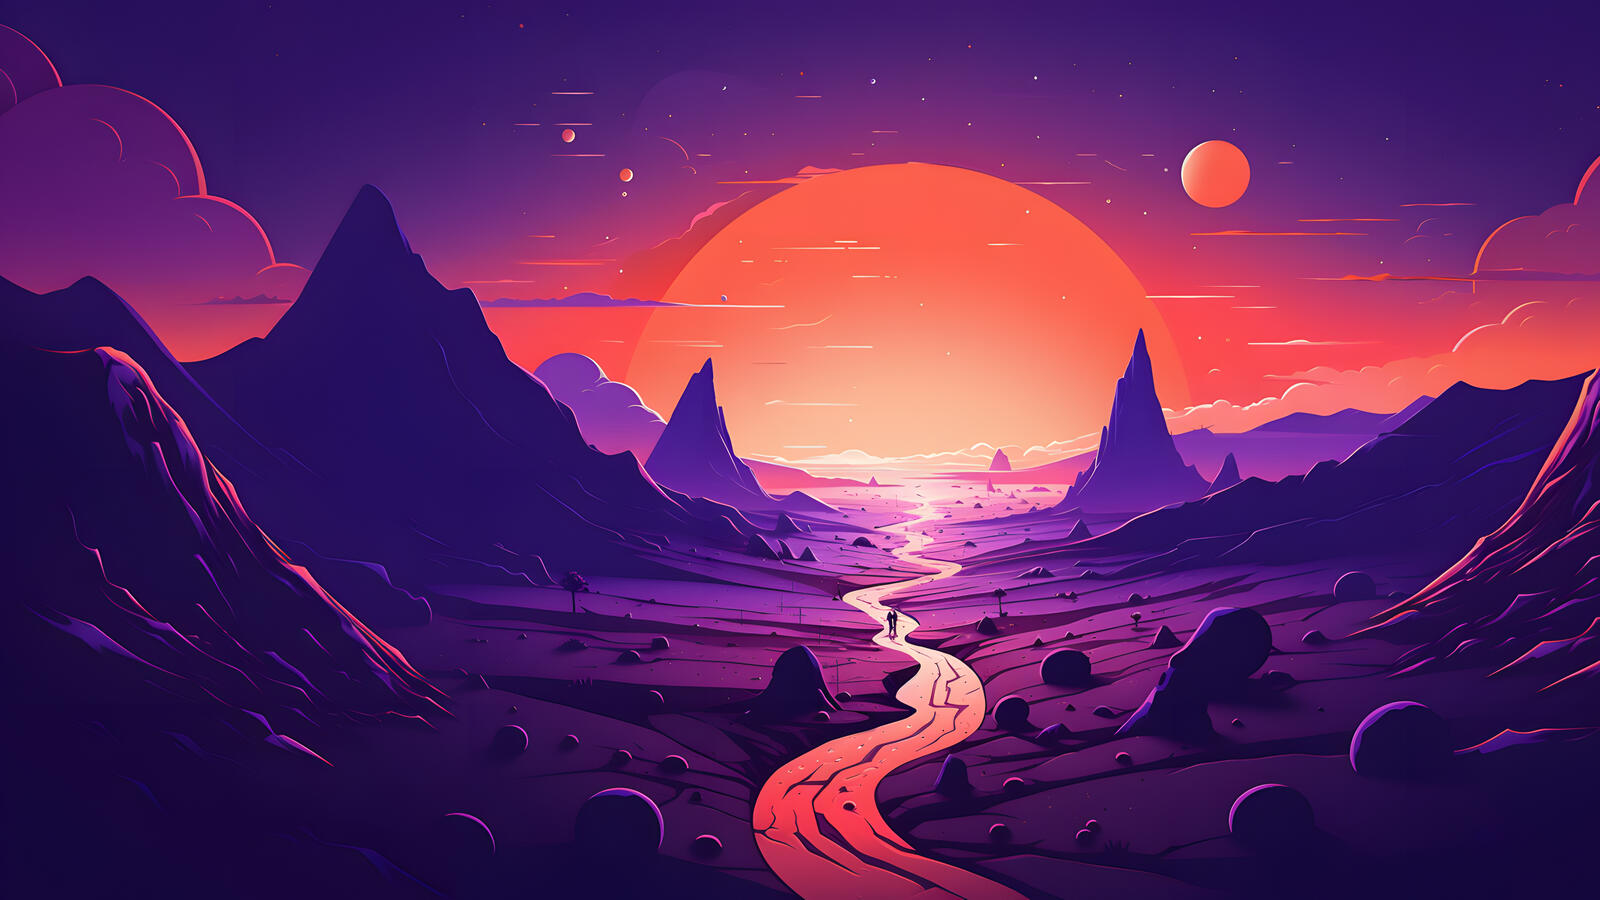 Бесплатное фото Красочный рисунок с горами на фоне большого Солнца с Луной